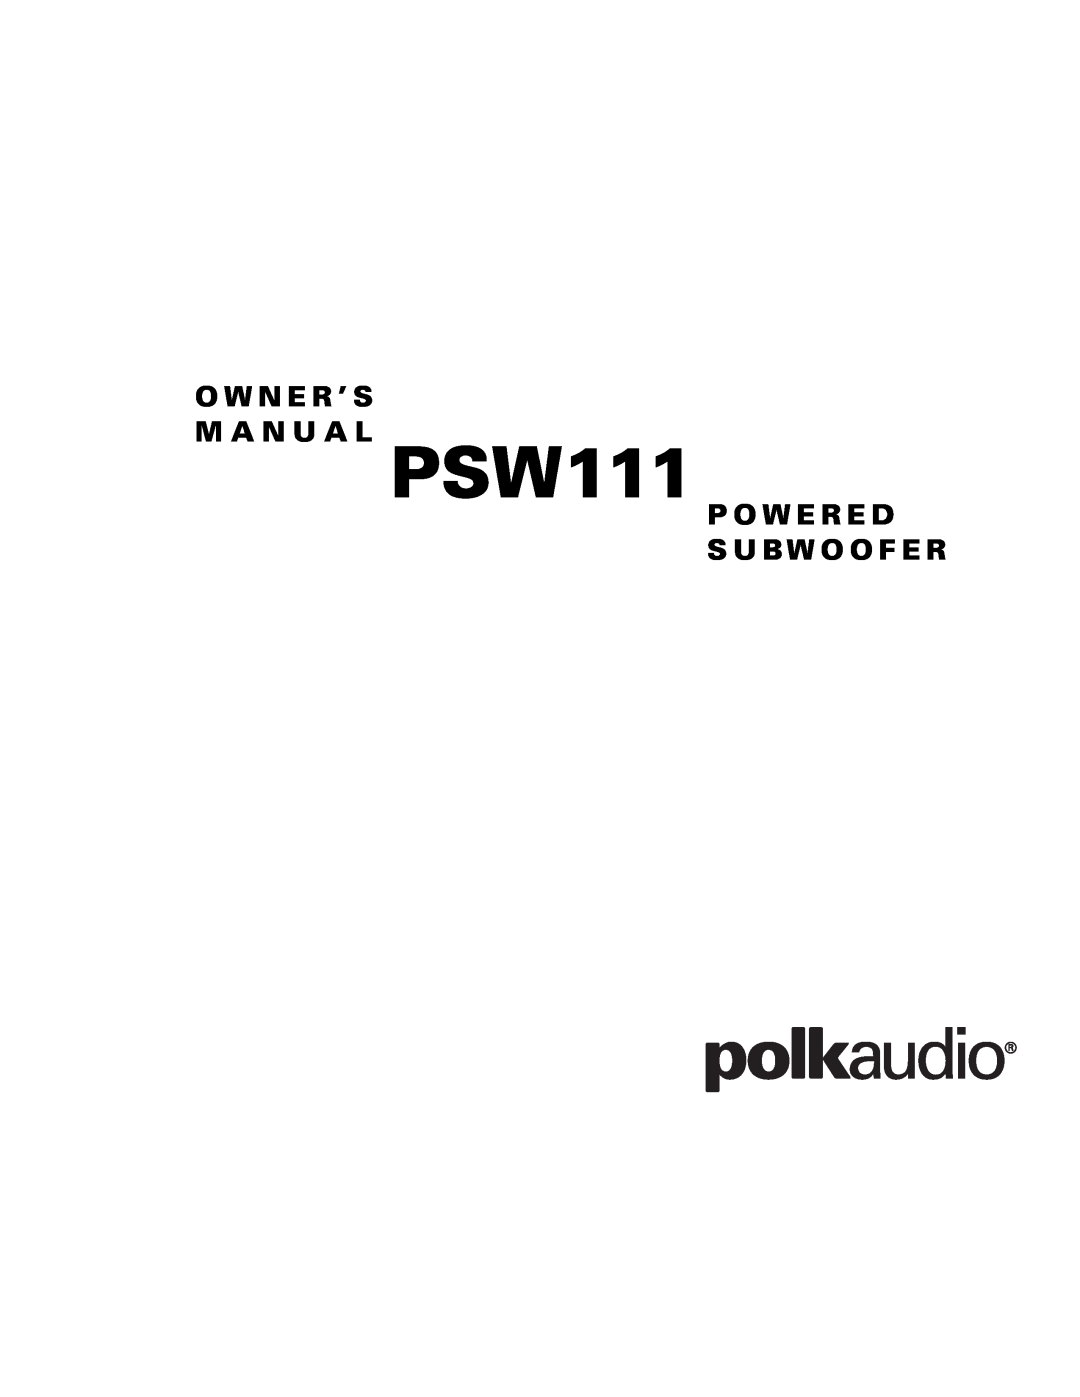 Polk Audio PSW111 owner manual O W N E R ’ S M A N U A L, P O W E R E D S U Bw O O F E R 